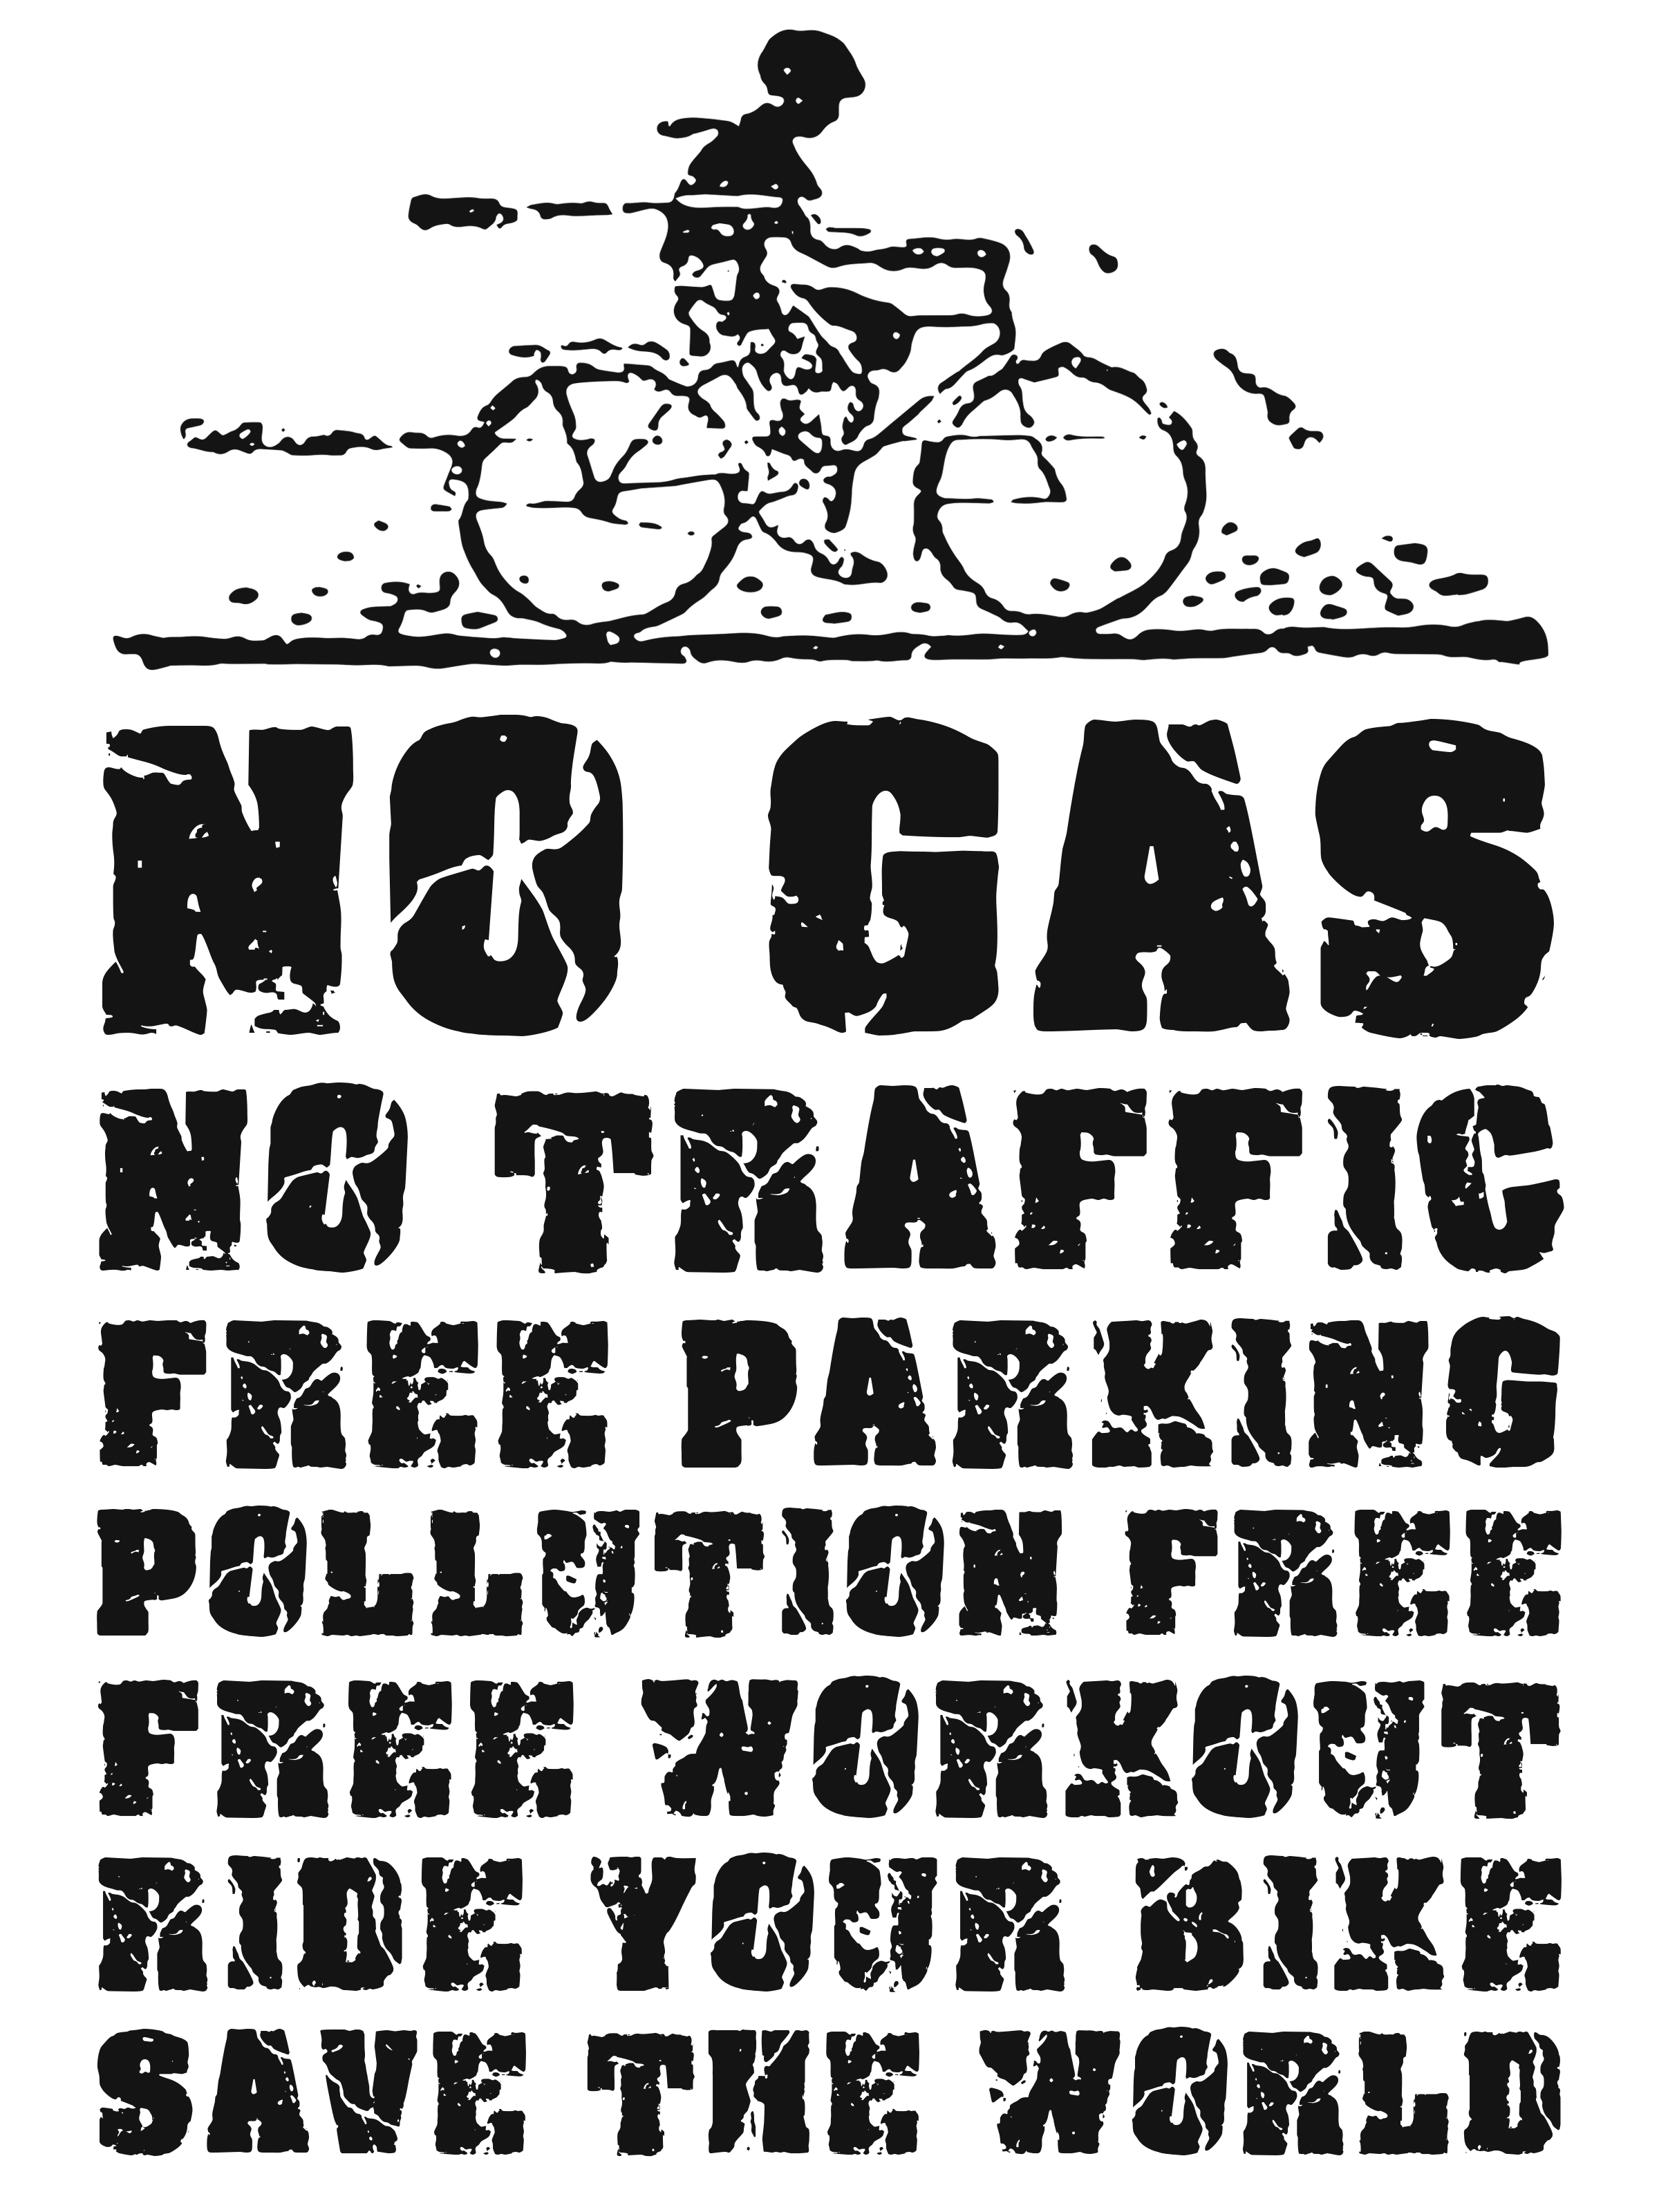 0081 – No Gas, No Traffic